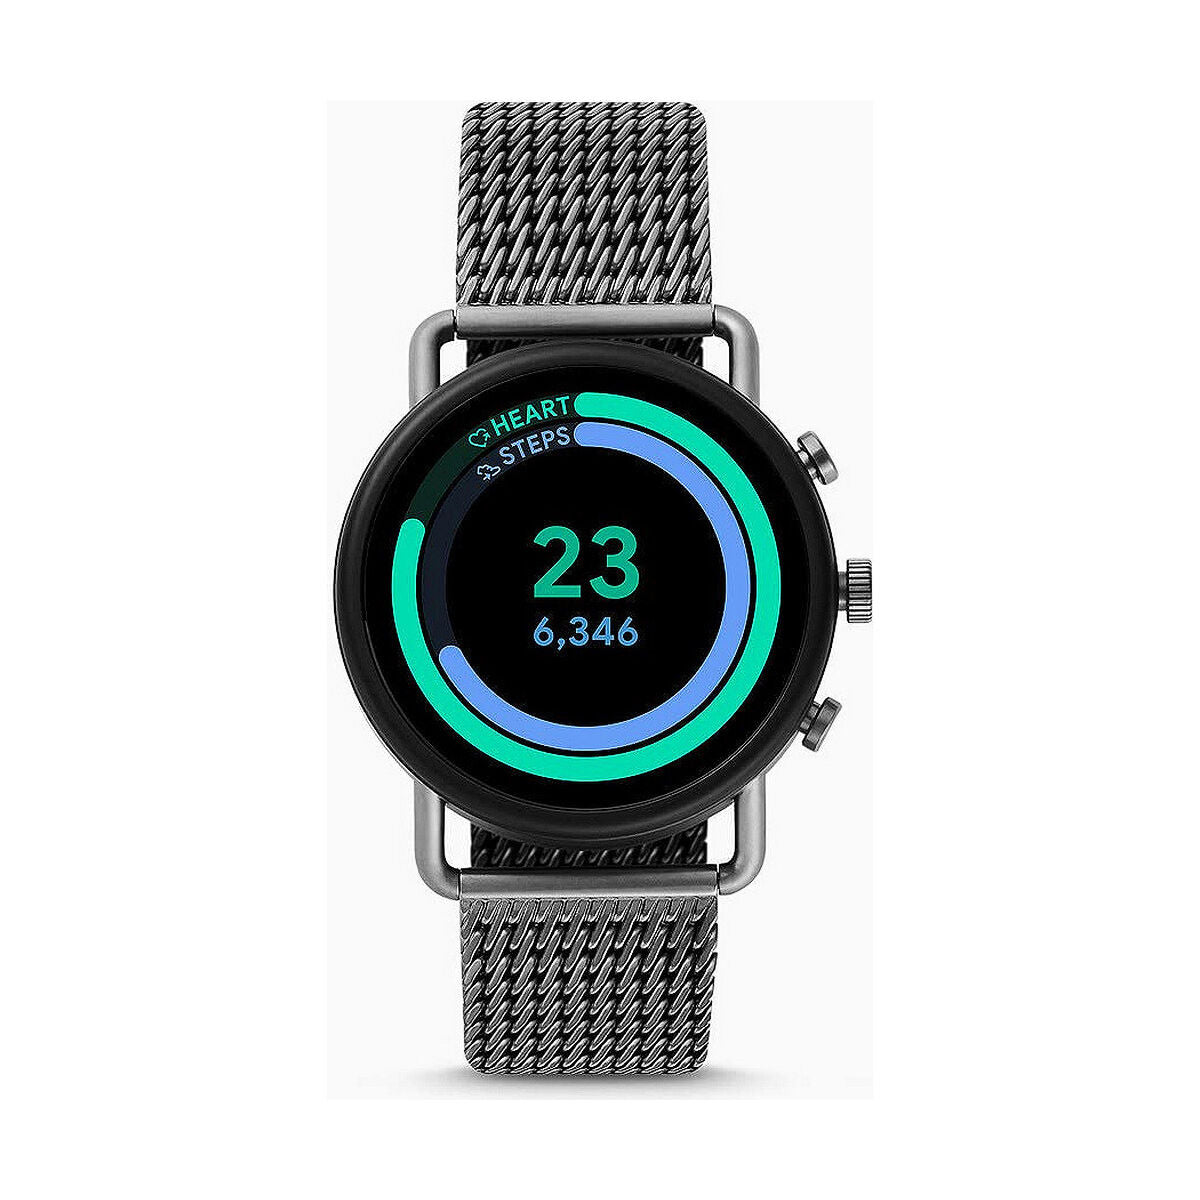 Kaufe Smartwatch Skagen FALSTER bei AWK Flagship um € 220.00